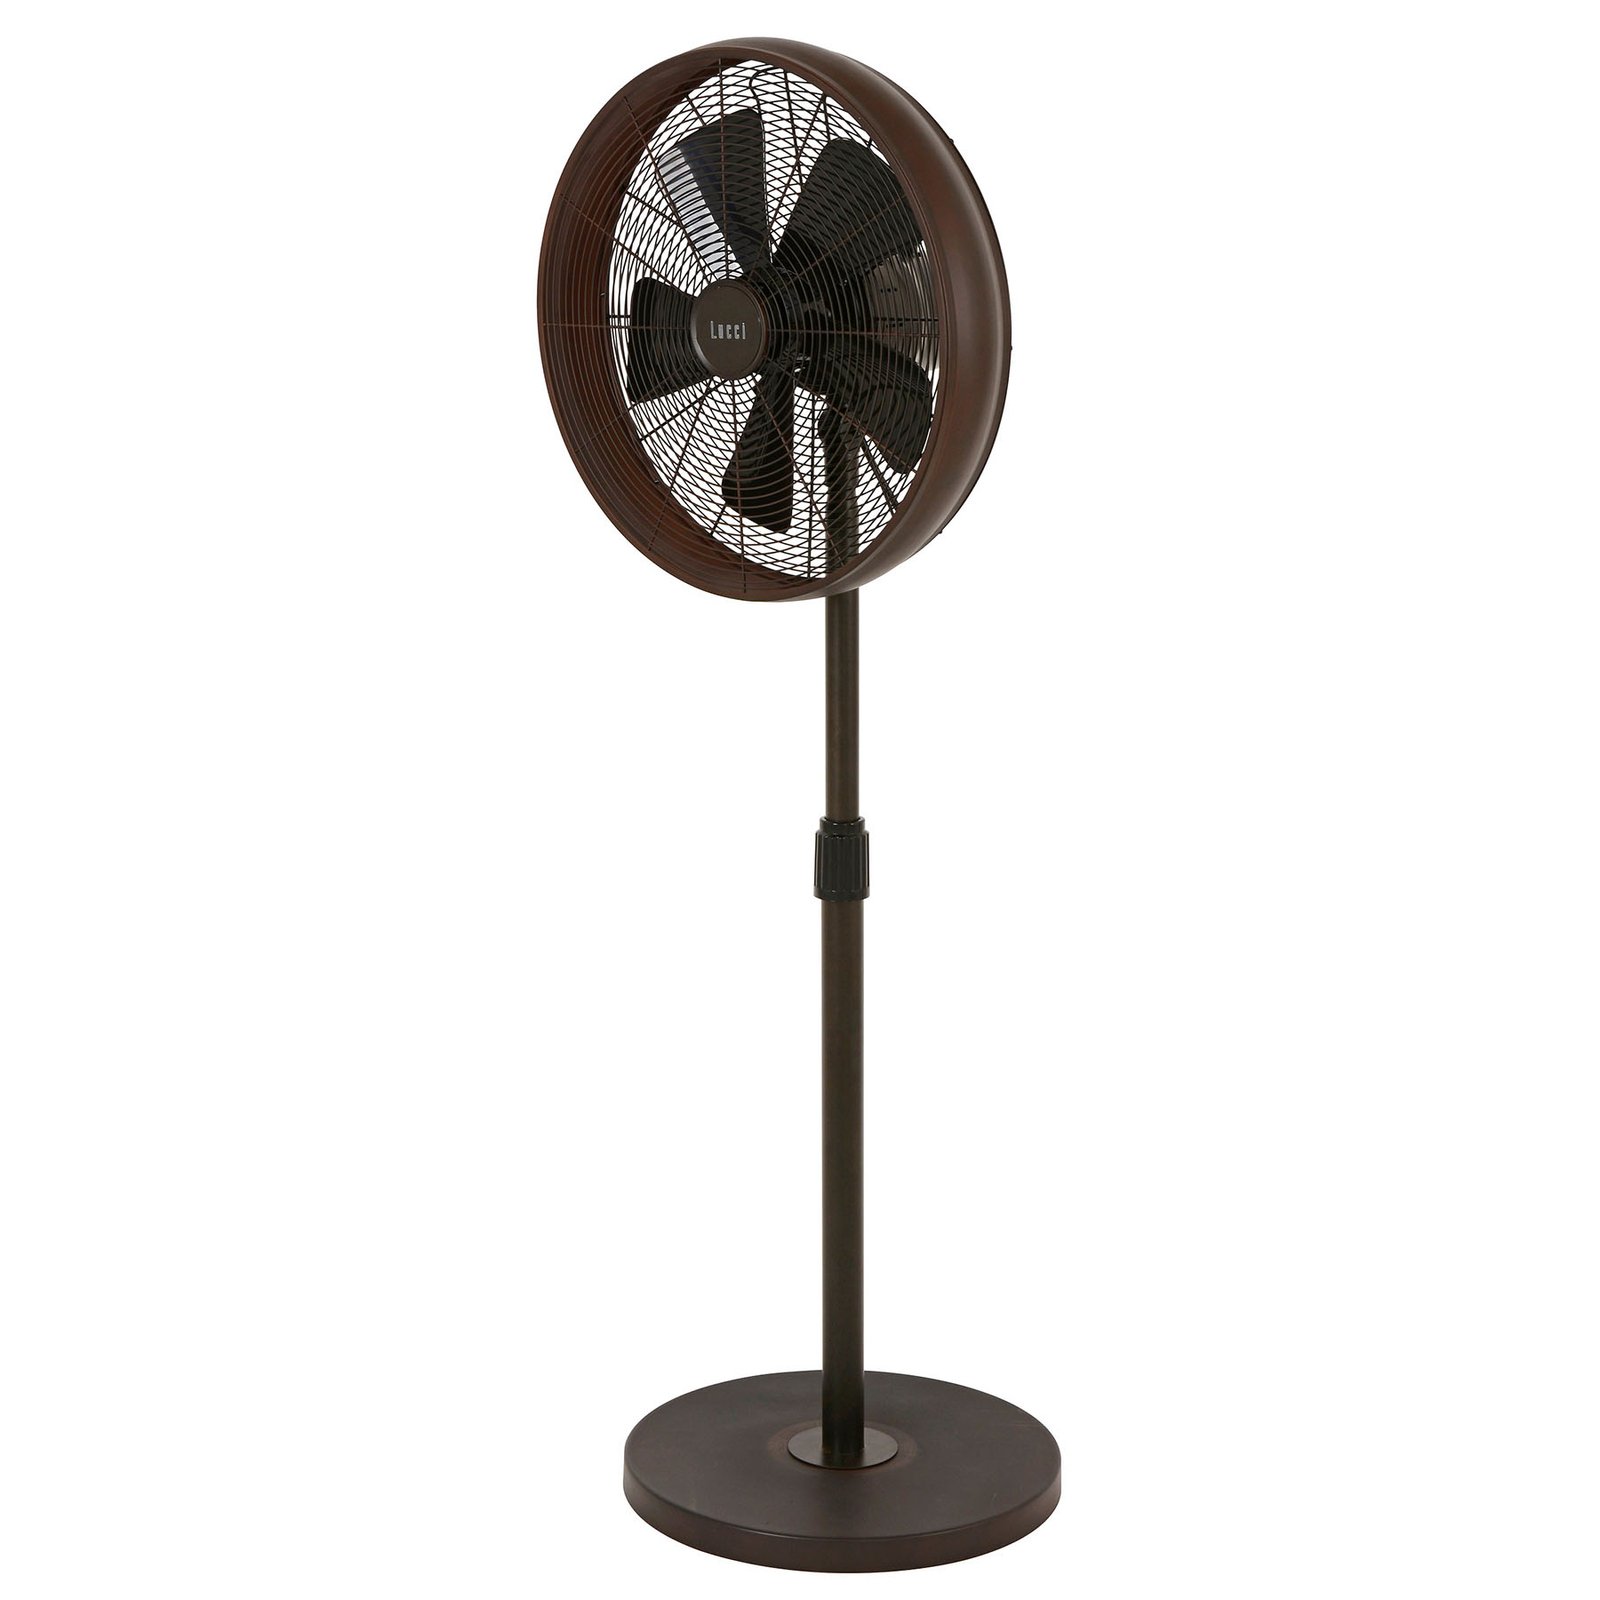 Staande ventilator Breeze 122cm, ronde voet, brons